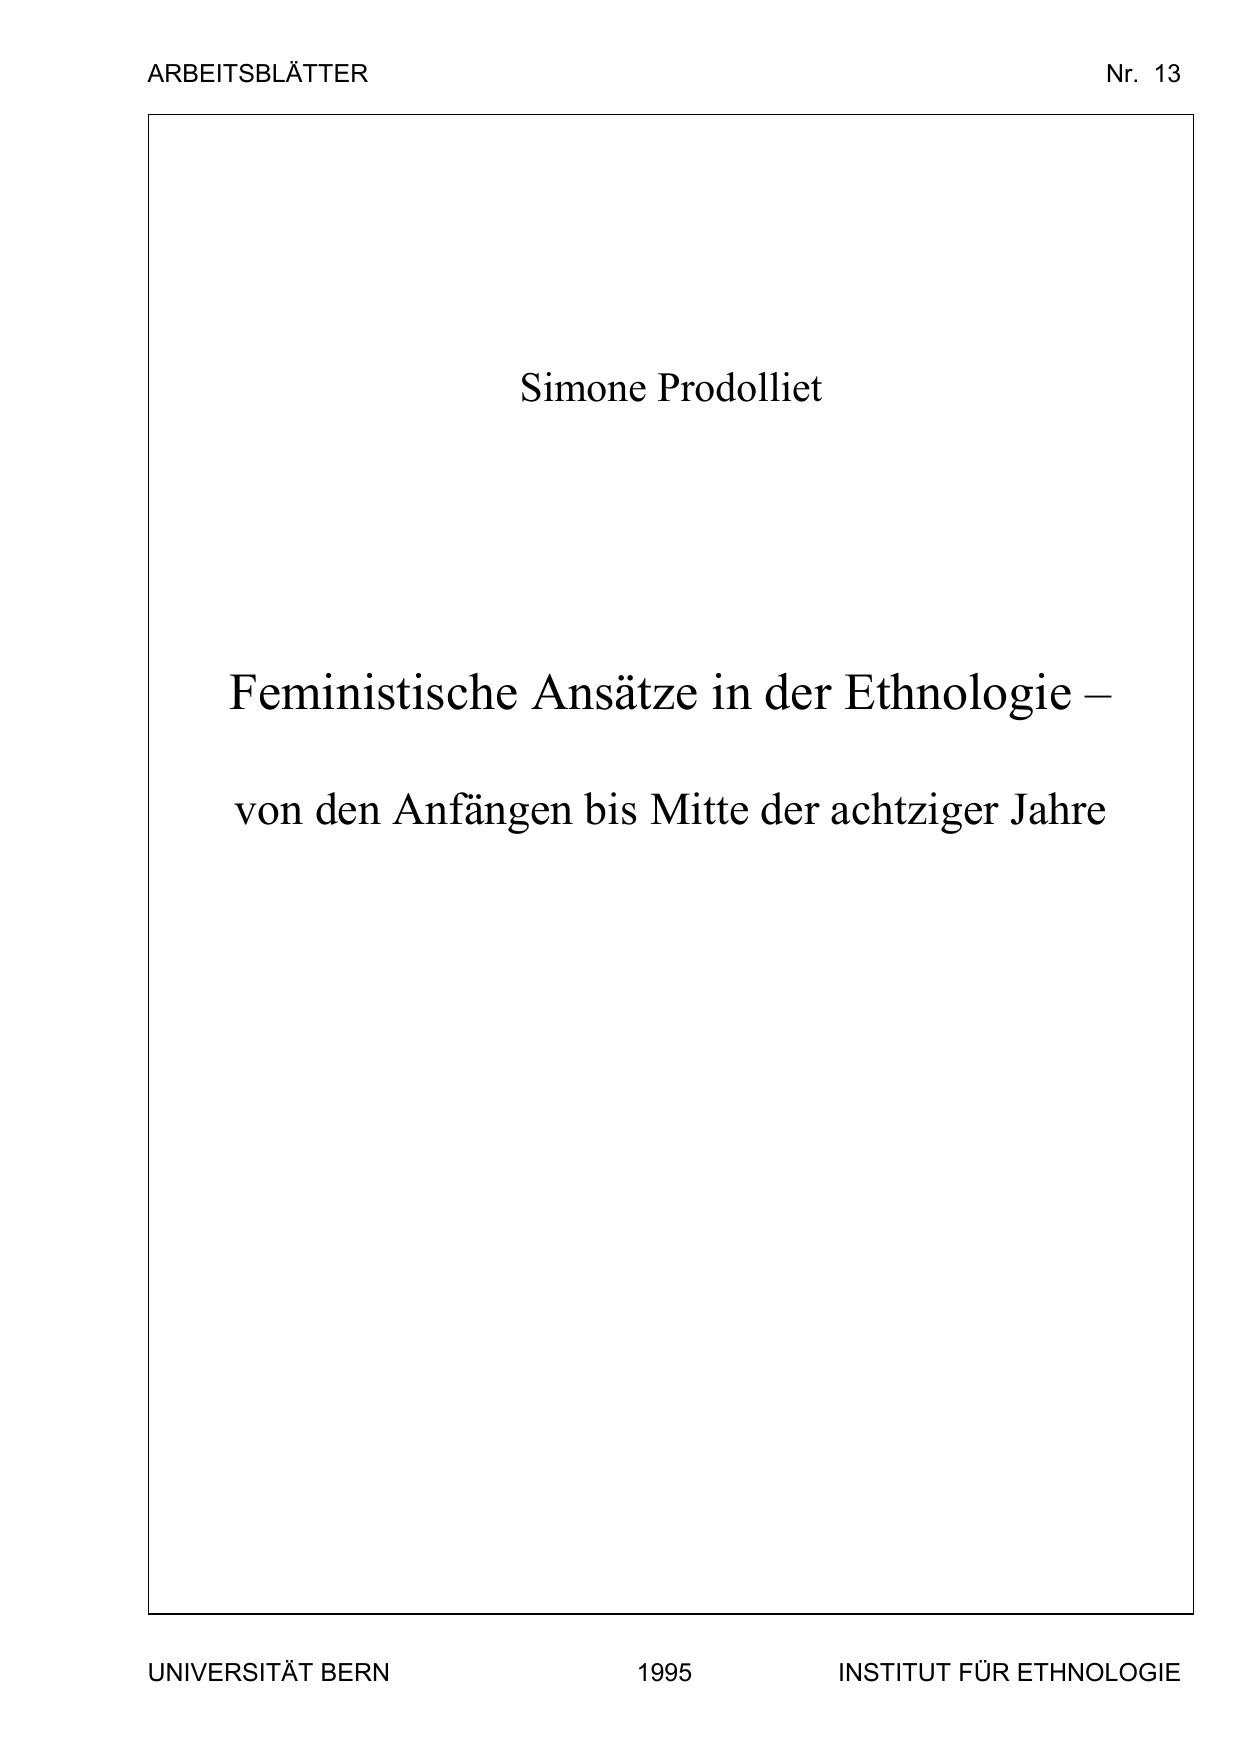 Feministische Ansätze in der Ethnologie : von den Anfängen bis Mitte der achtziger Jahre